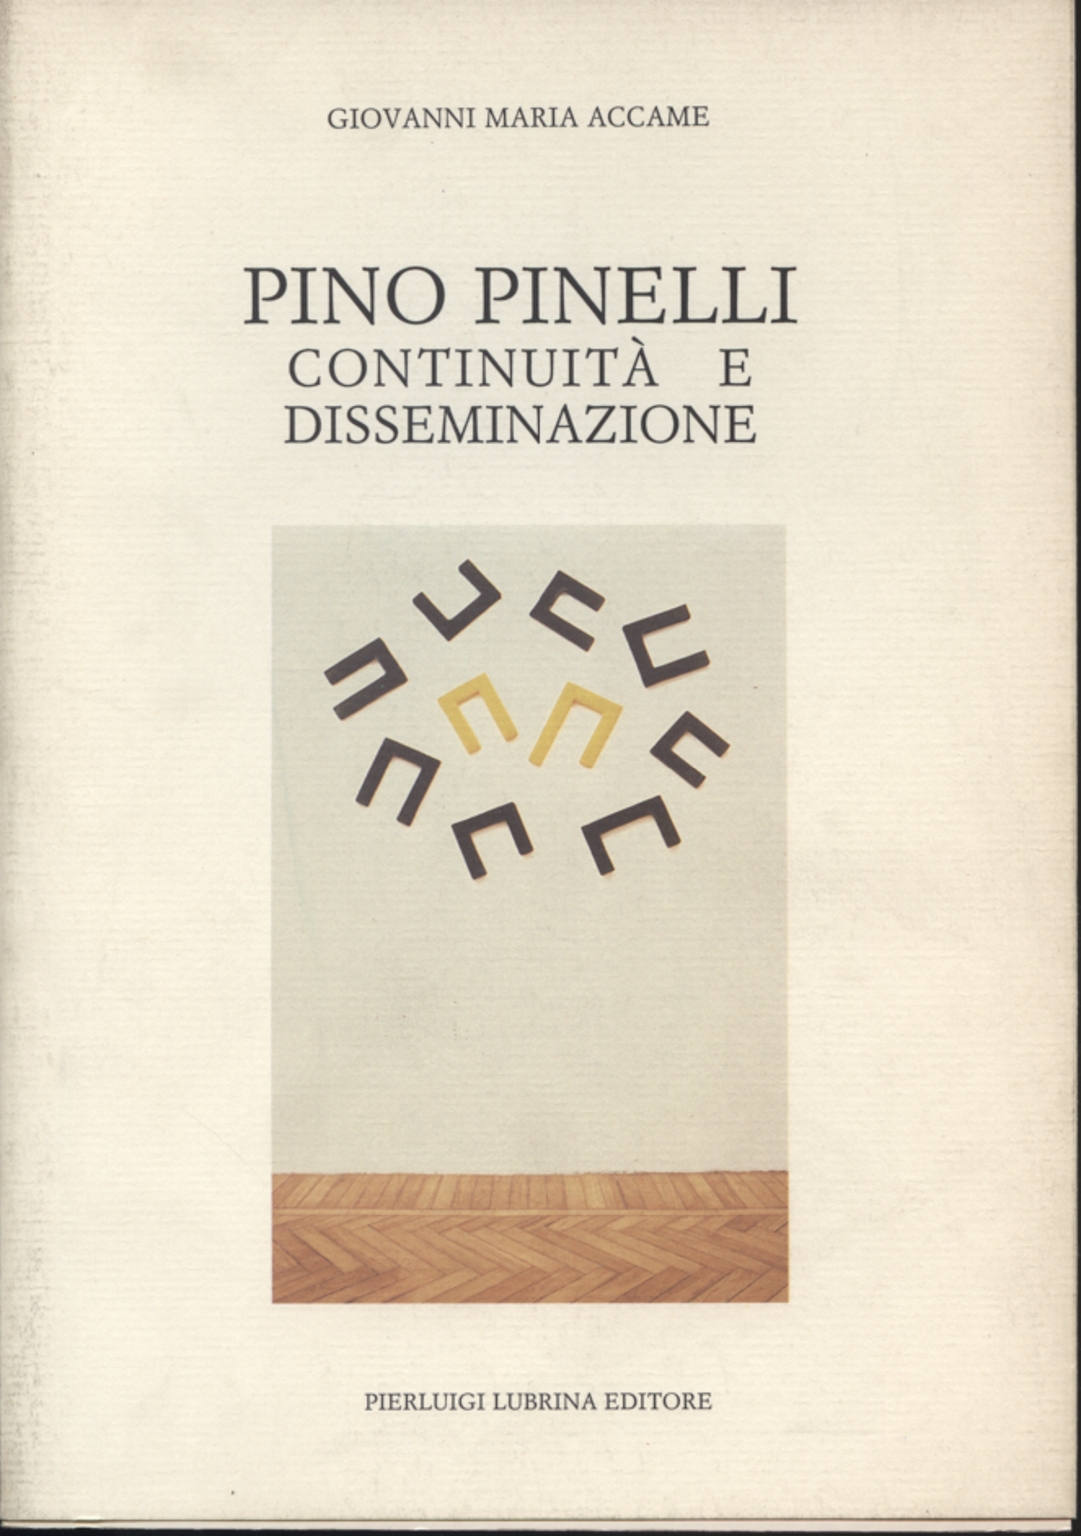 Pino Pinelli: continuity and dissemination, Giovanni Maria Accame